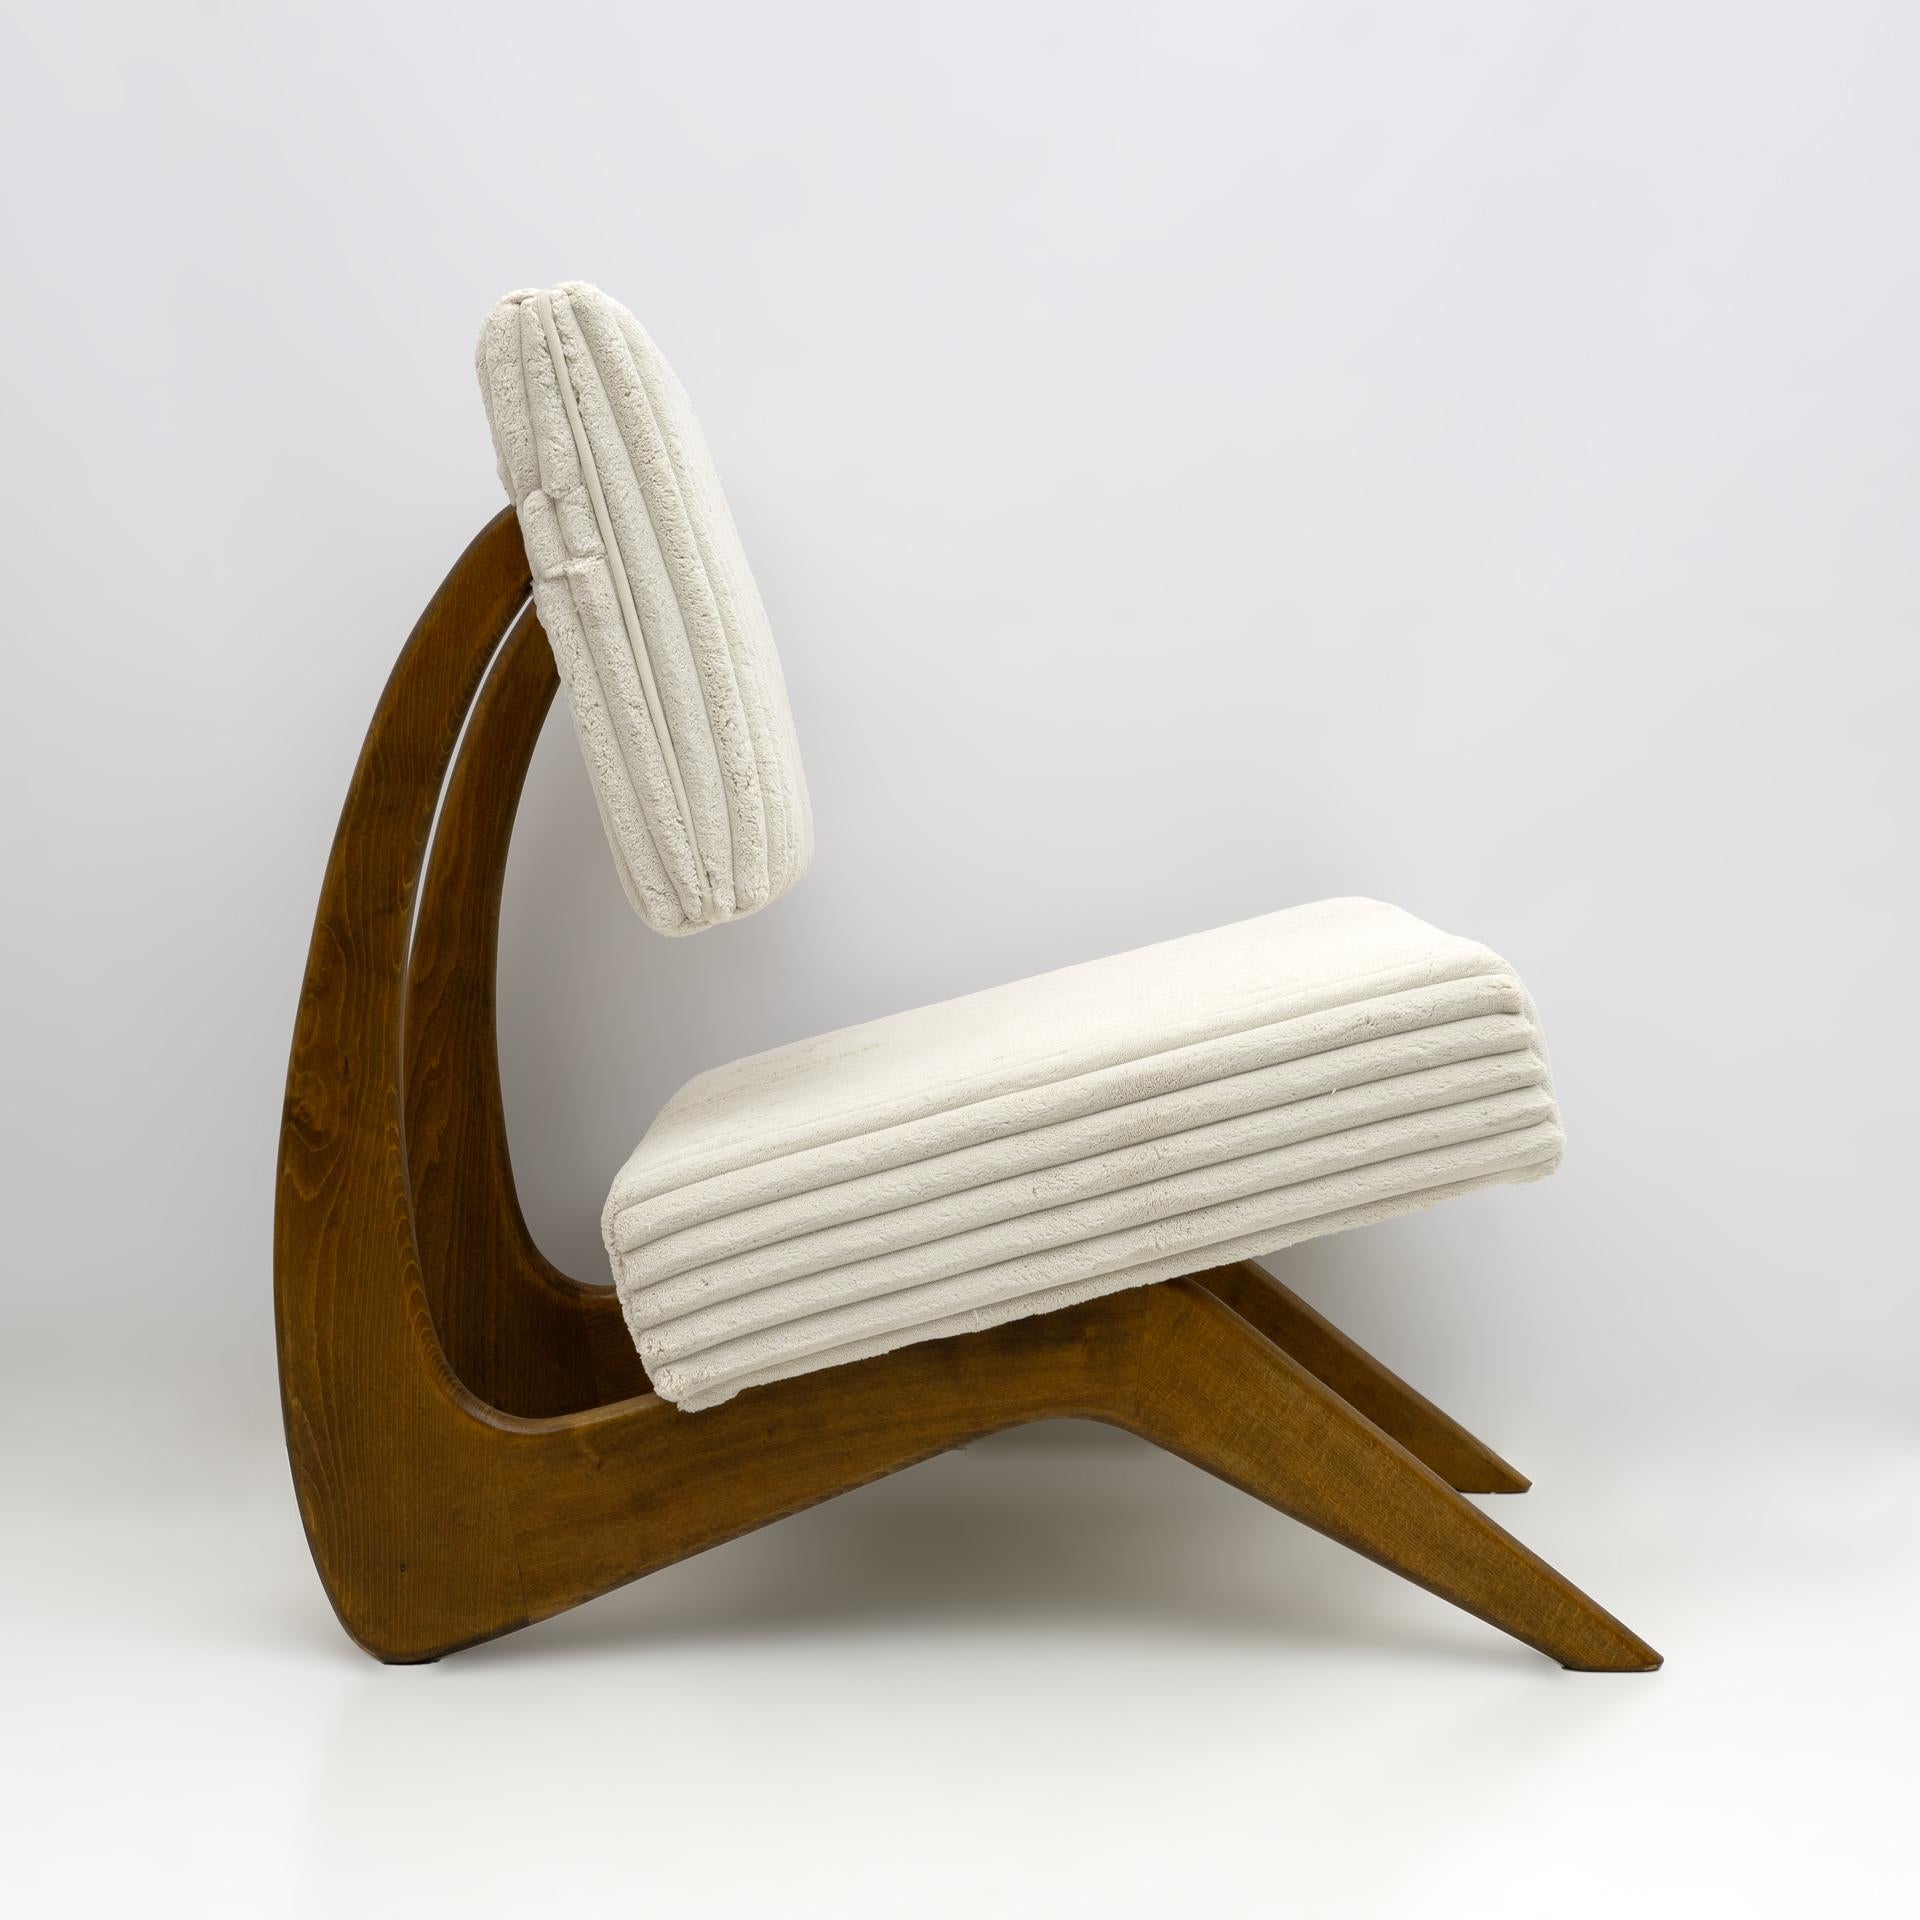 Ein Paar Sessel des amerikanischen Designers Adrian Pearsall. Die Struktur dieser Lounge-Cocktailsessel besteht aus Walnussholz mit einer schönen geschwungenen Form und ist mit einem langhaarigen Bouclè-Stoff in hellem Elfenbein bezogen. Die Sessel